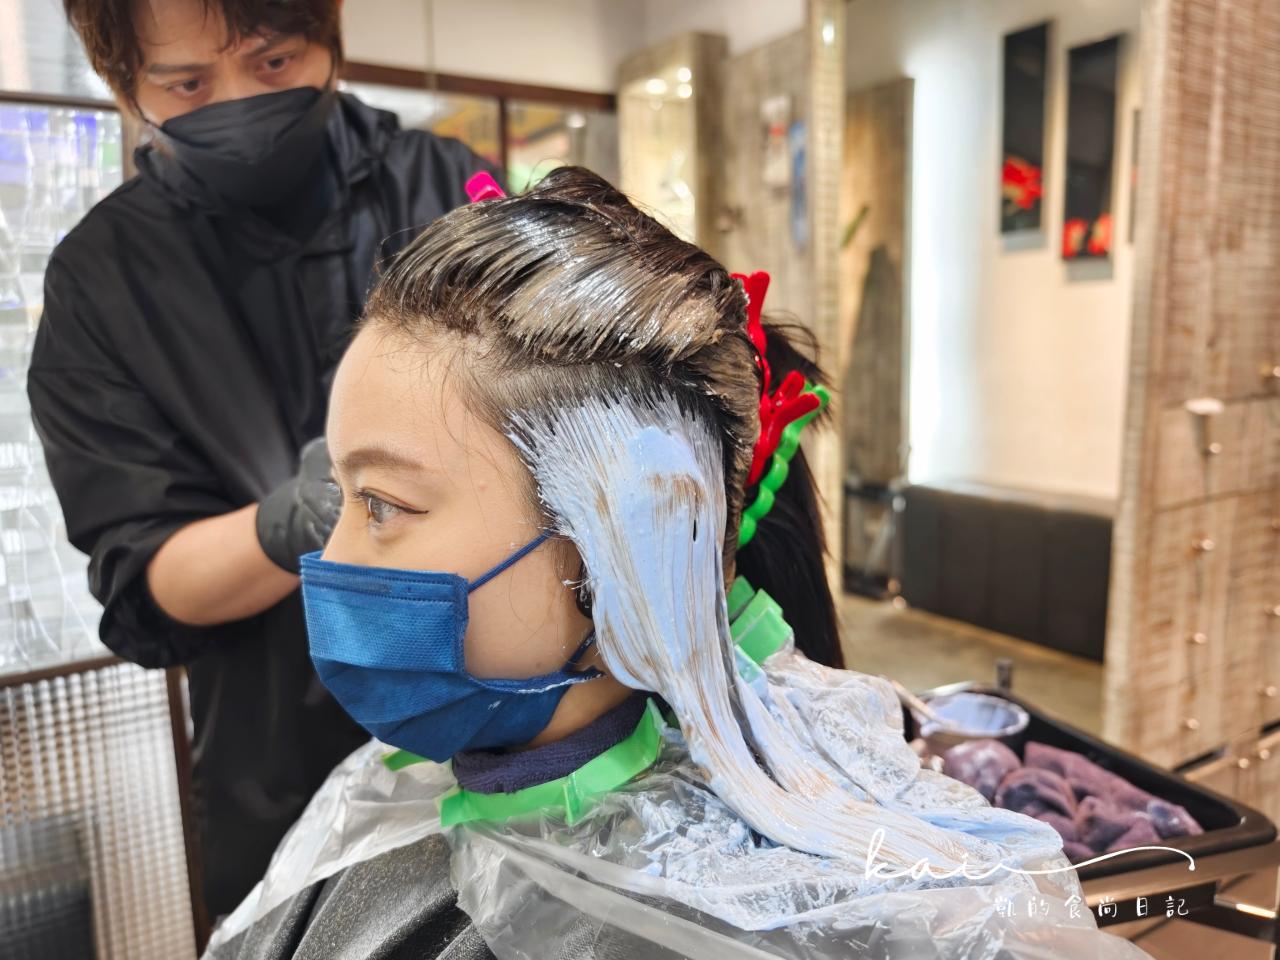 中山站推薦燙髮、剪髮、染髮-PLUUS 2023最新優惠。燙直不扁塌的小秘訣！@PLUUS馬休老師